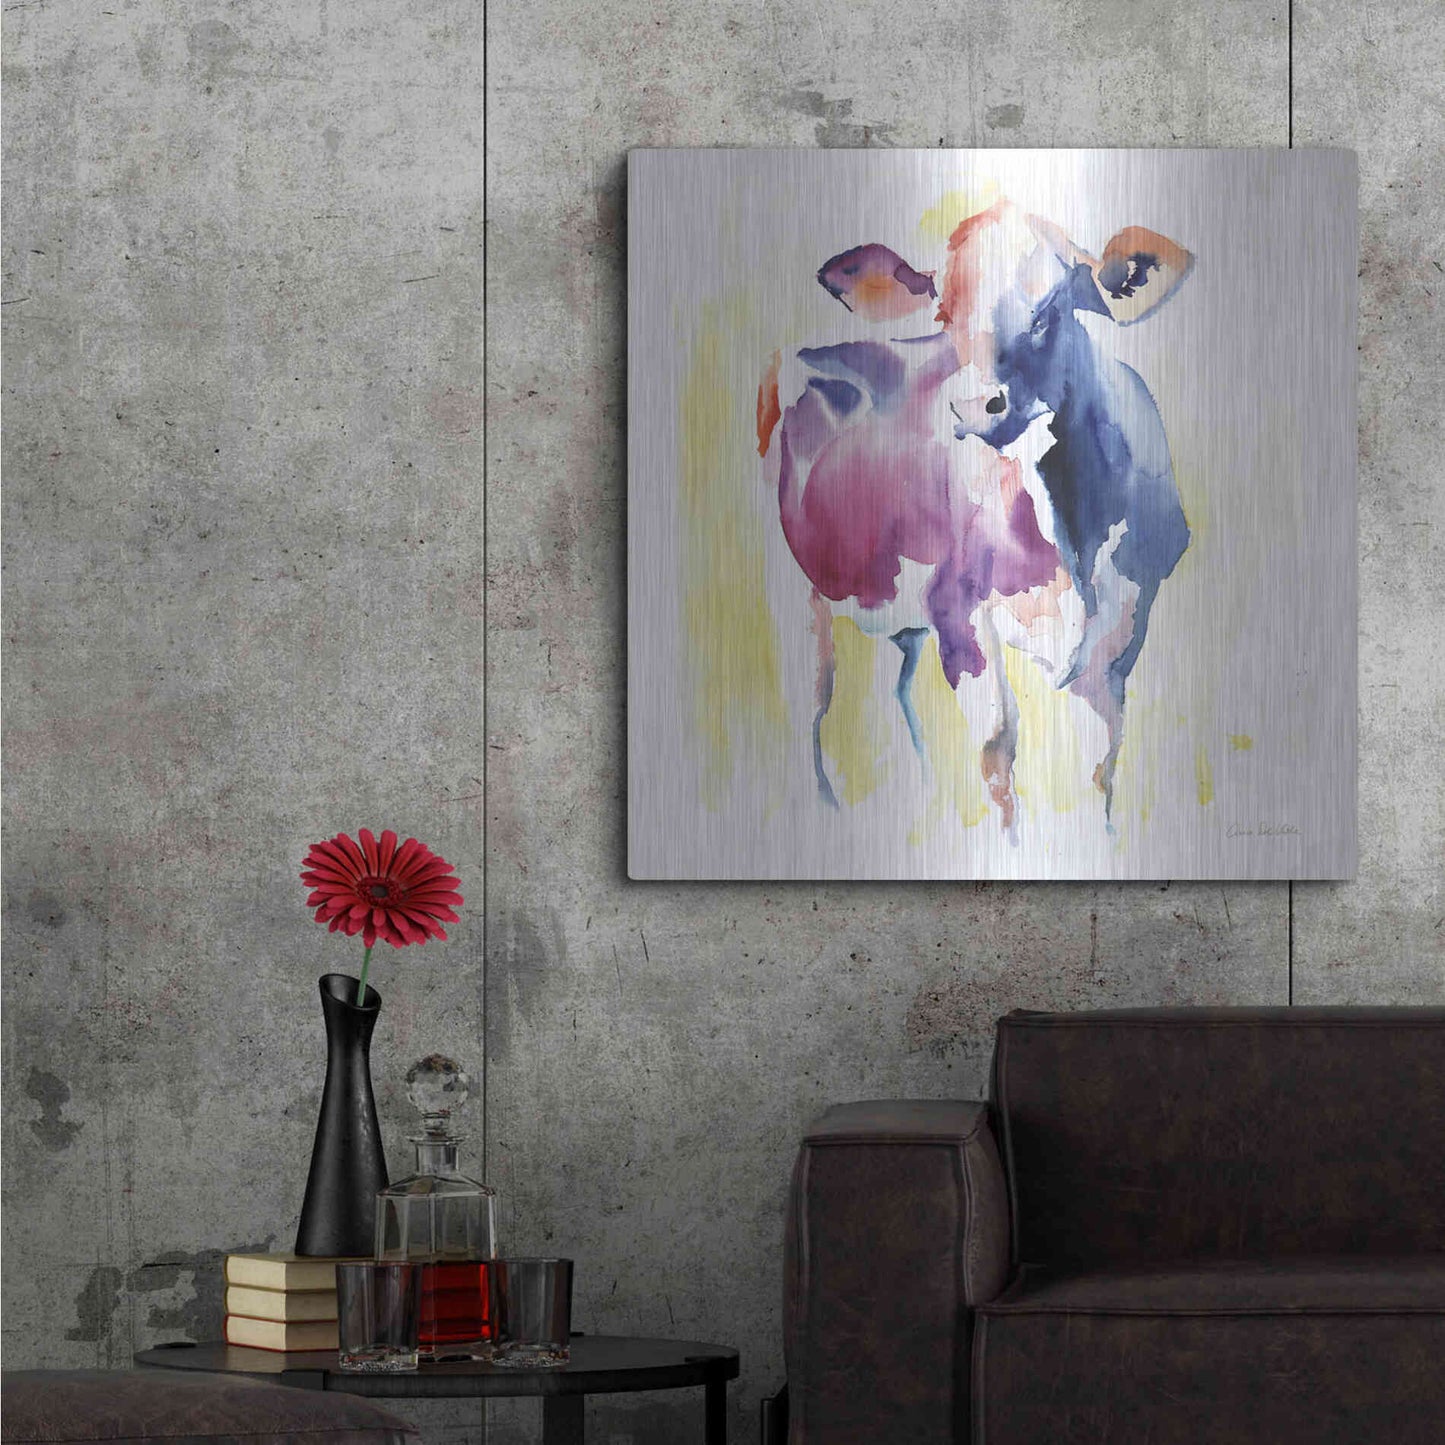 Luxe Metal Art 'Holstein III' by Alan Majchrowicz, Metal Wall Art,36x36